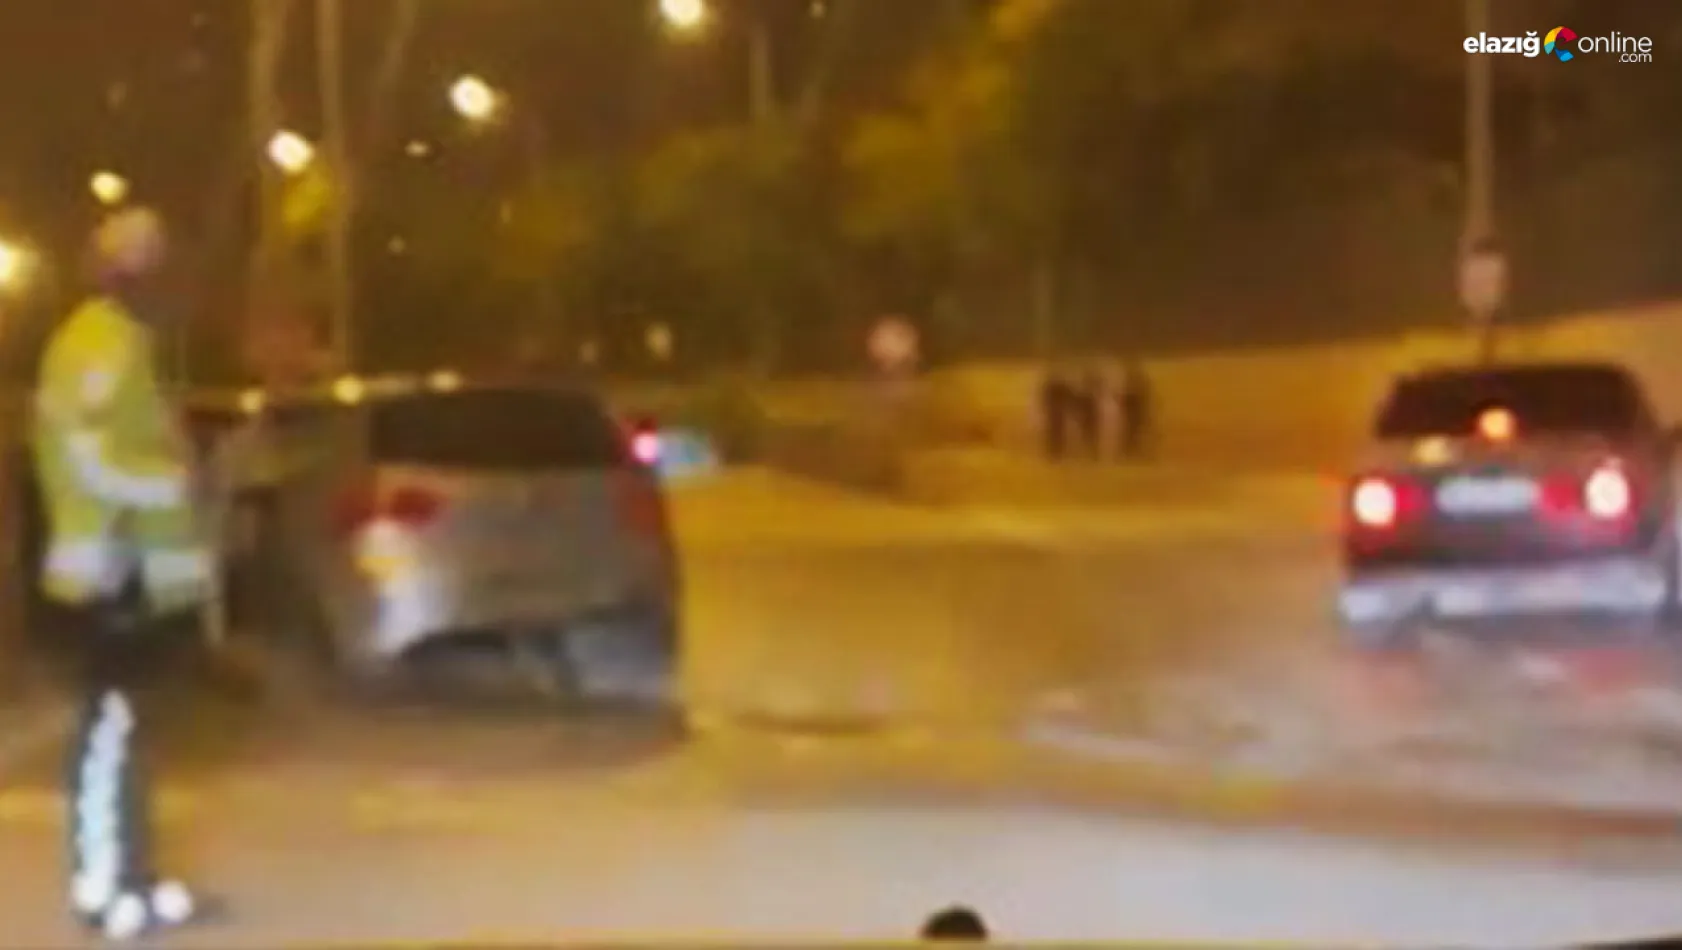 Elazığ'da trafik kazası! Aynı yönde giden iki araç çarpıştı